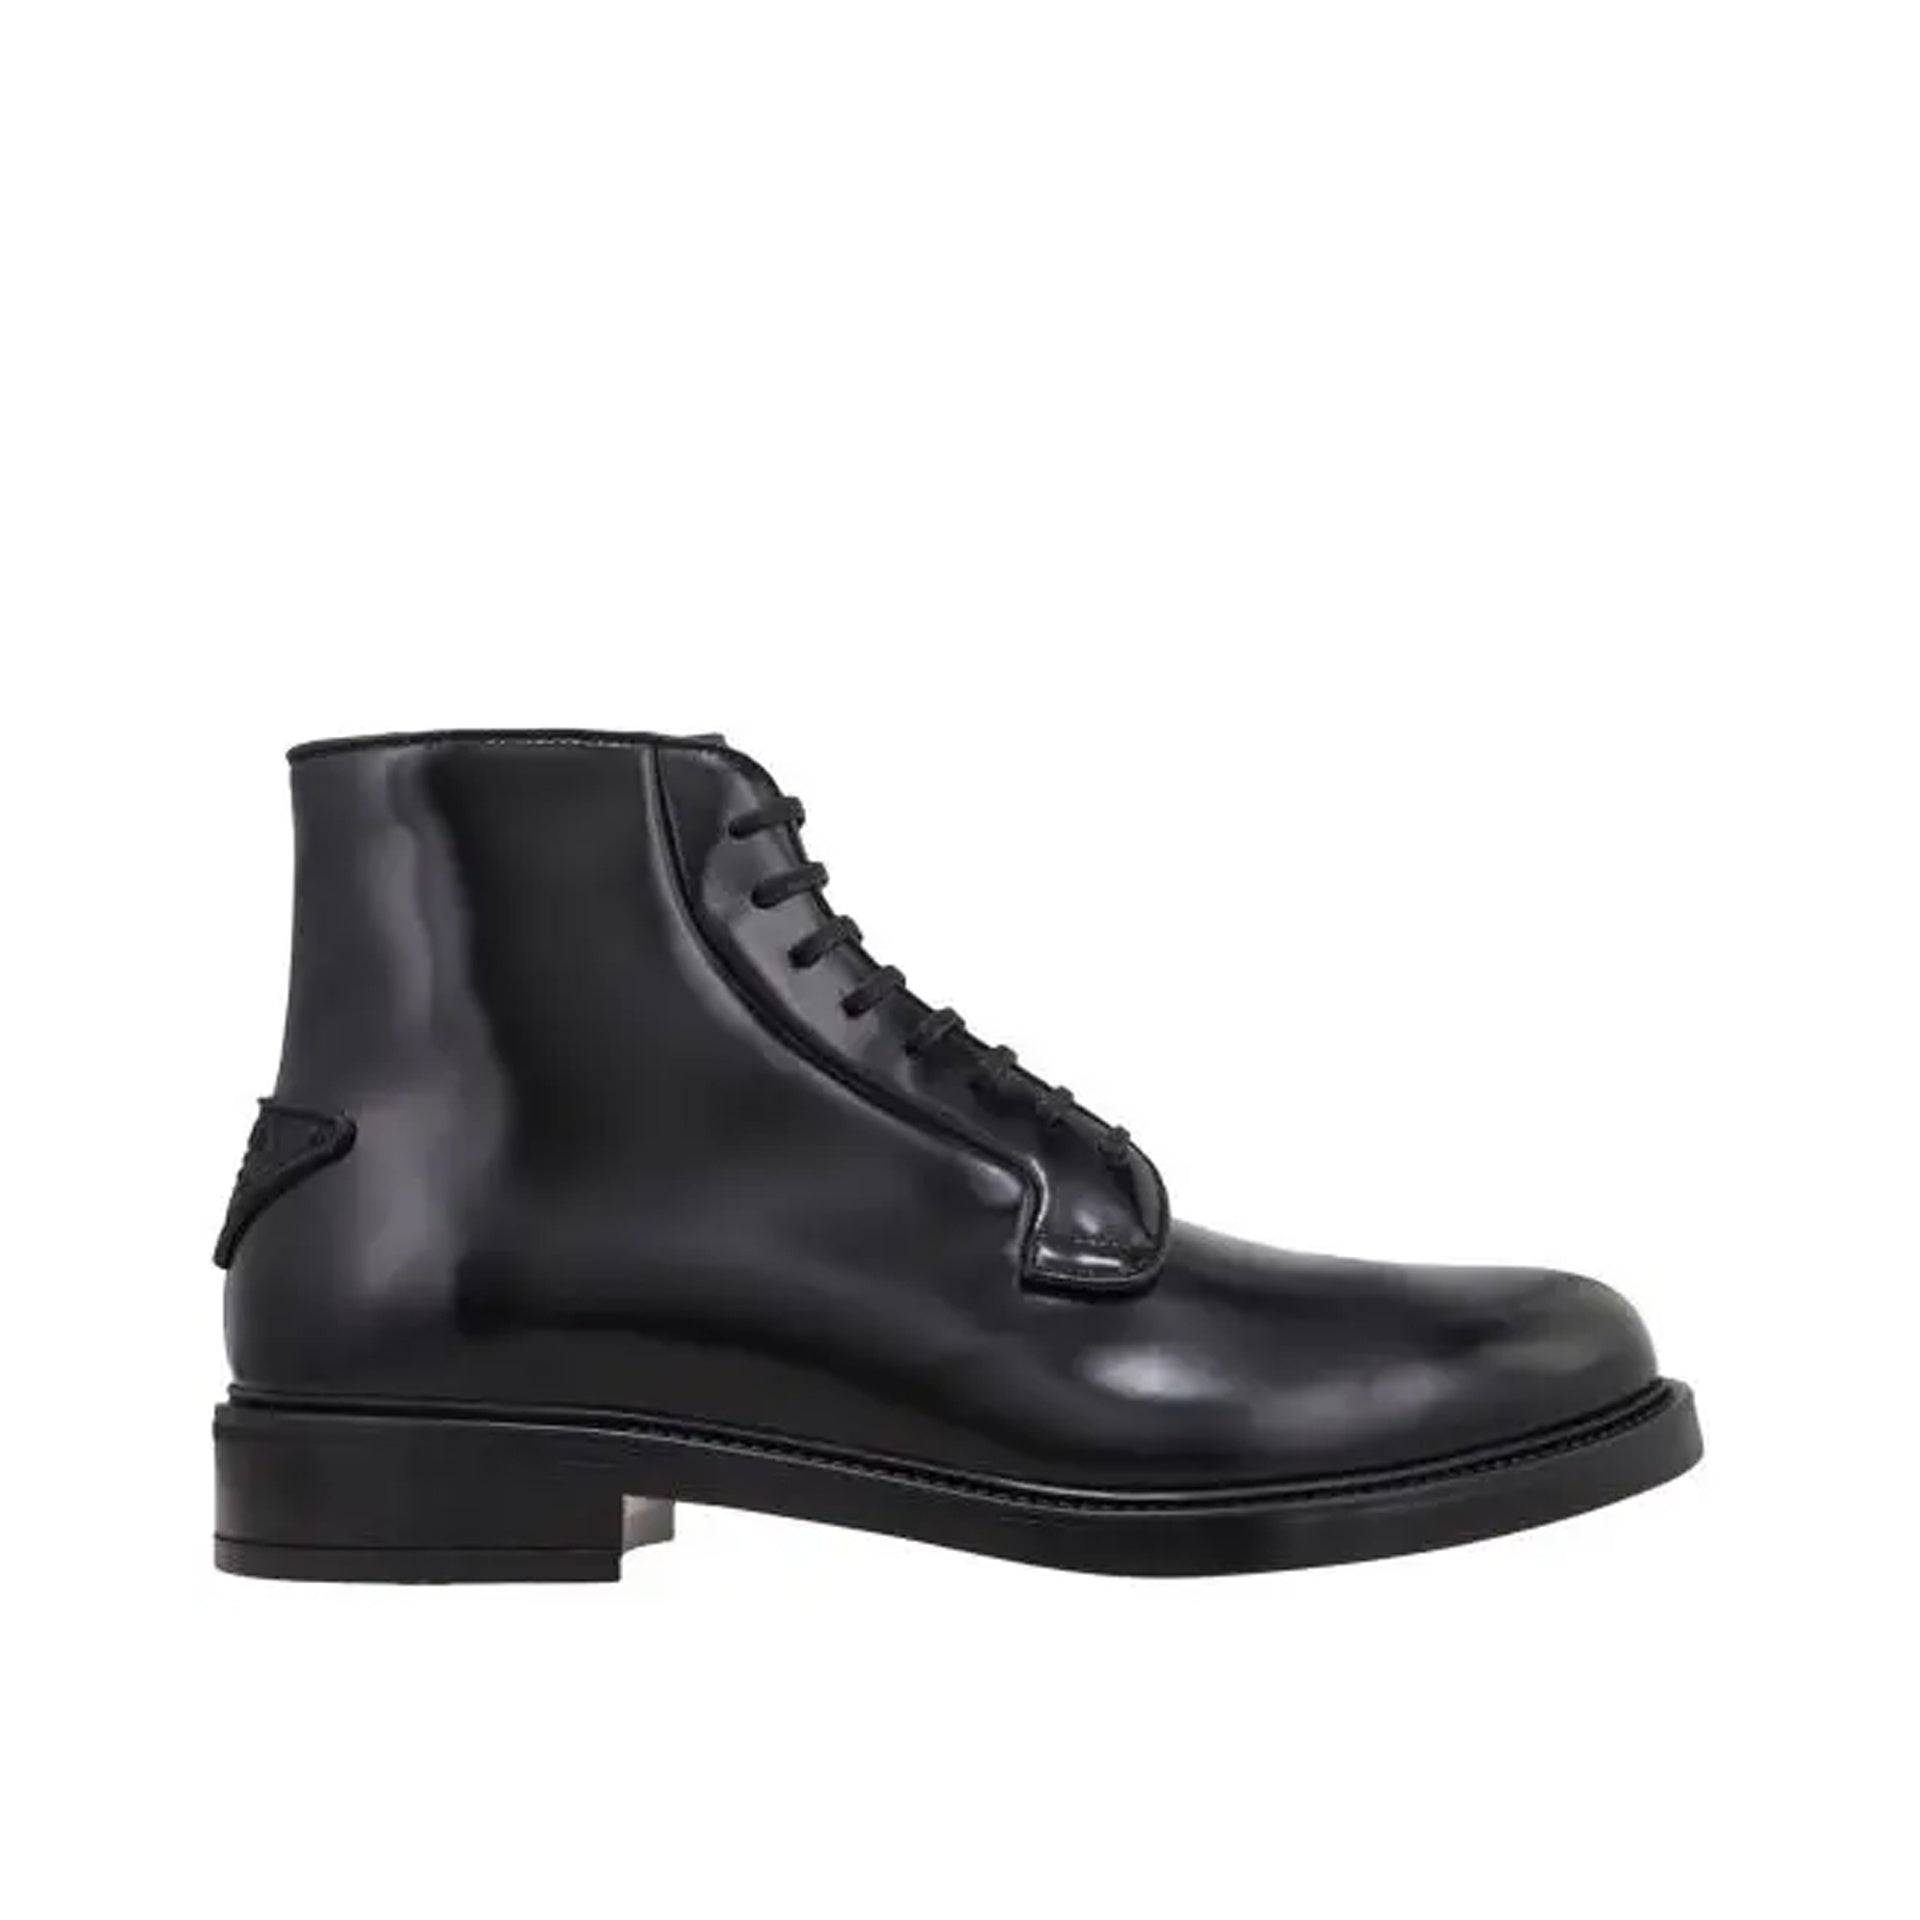 PRADA-Outlet-Sale-Prada Leather Lace-Up Boots-MEN SHOES-BLACK-43-ARCHIVIST